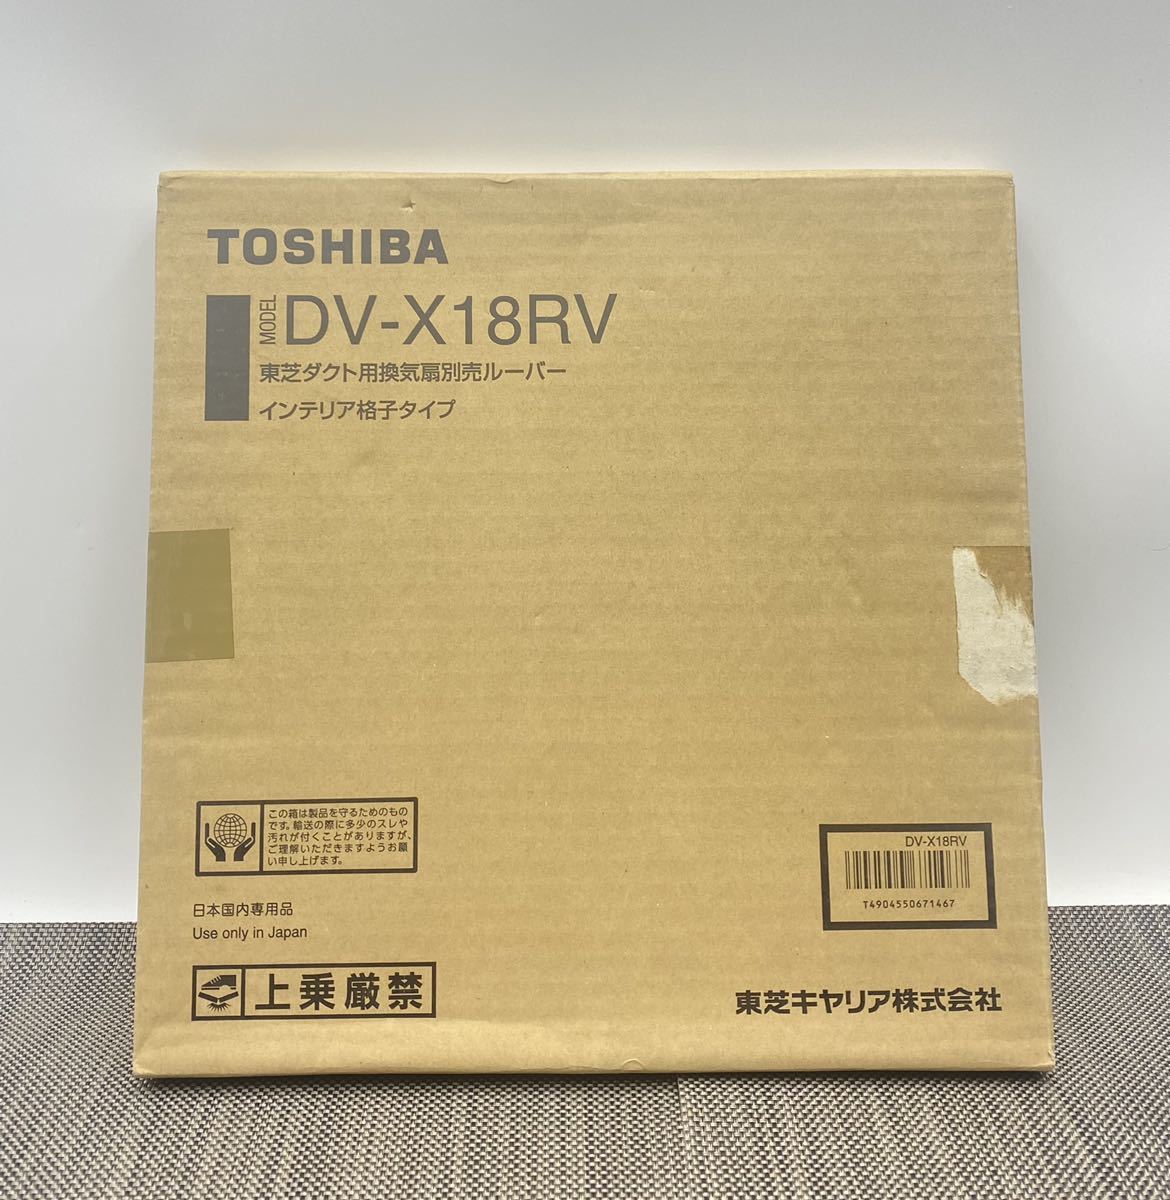 (no.7444)TOSHIBA канал для вытяжной вентилятор продается отдельно жалюзи интерьер .. модель *DV-X18RV*W33×D1.5×H33cm* кондиционер оборудование для жилищного строительства * не использовался 